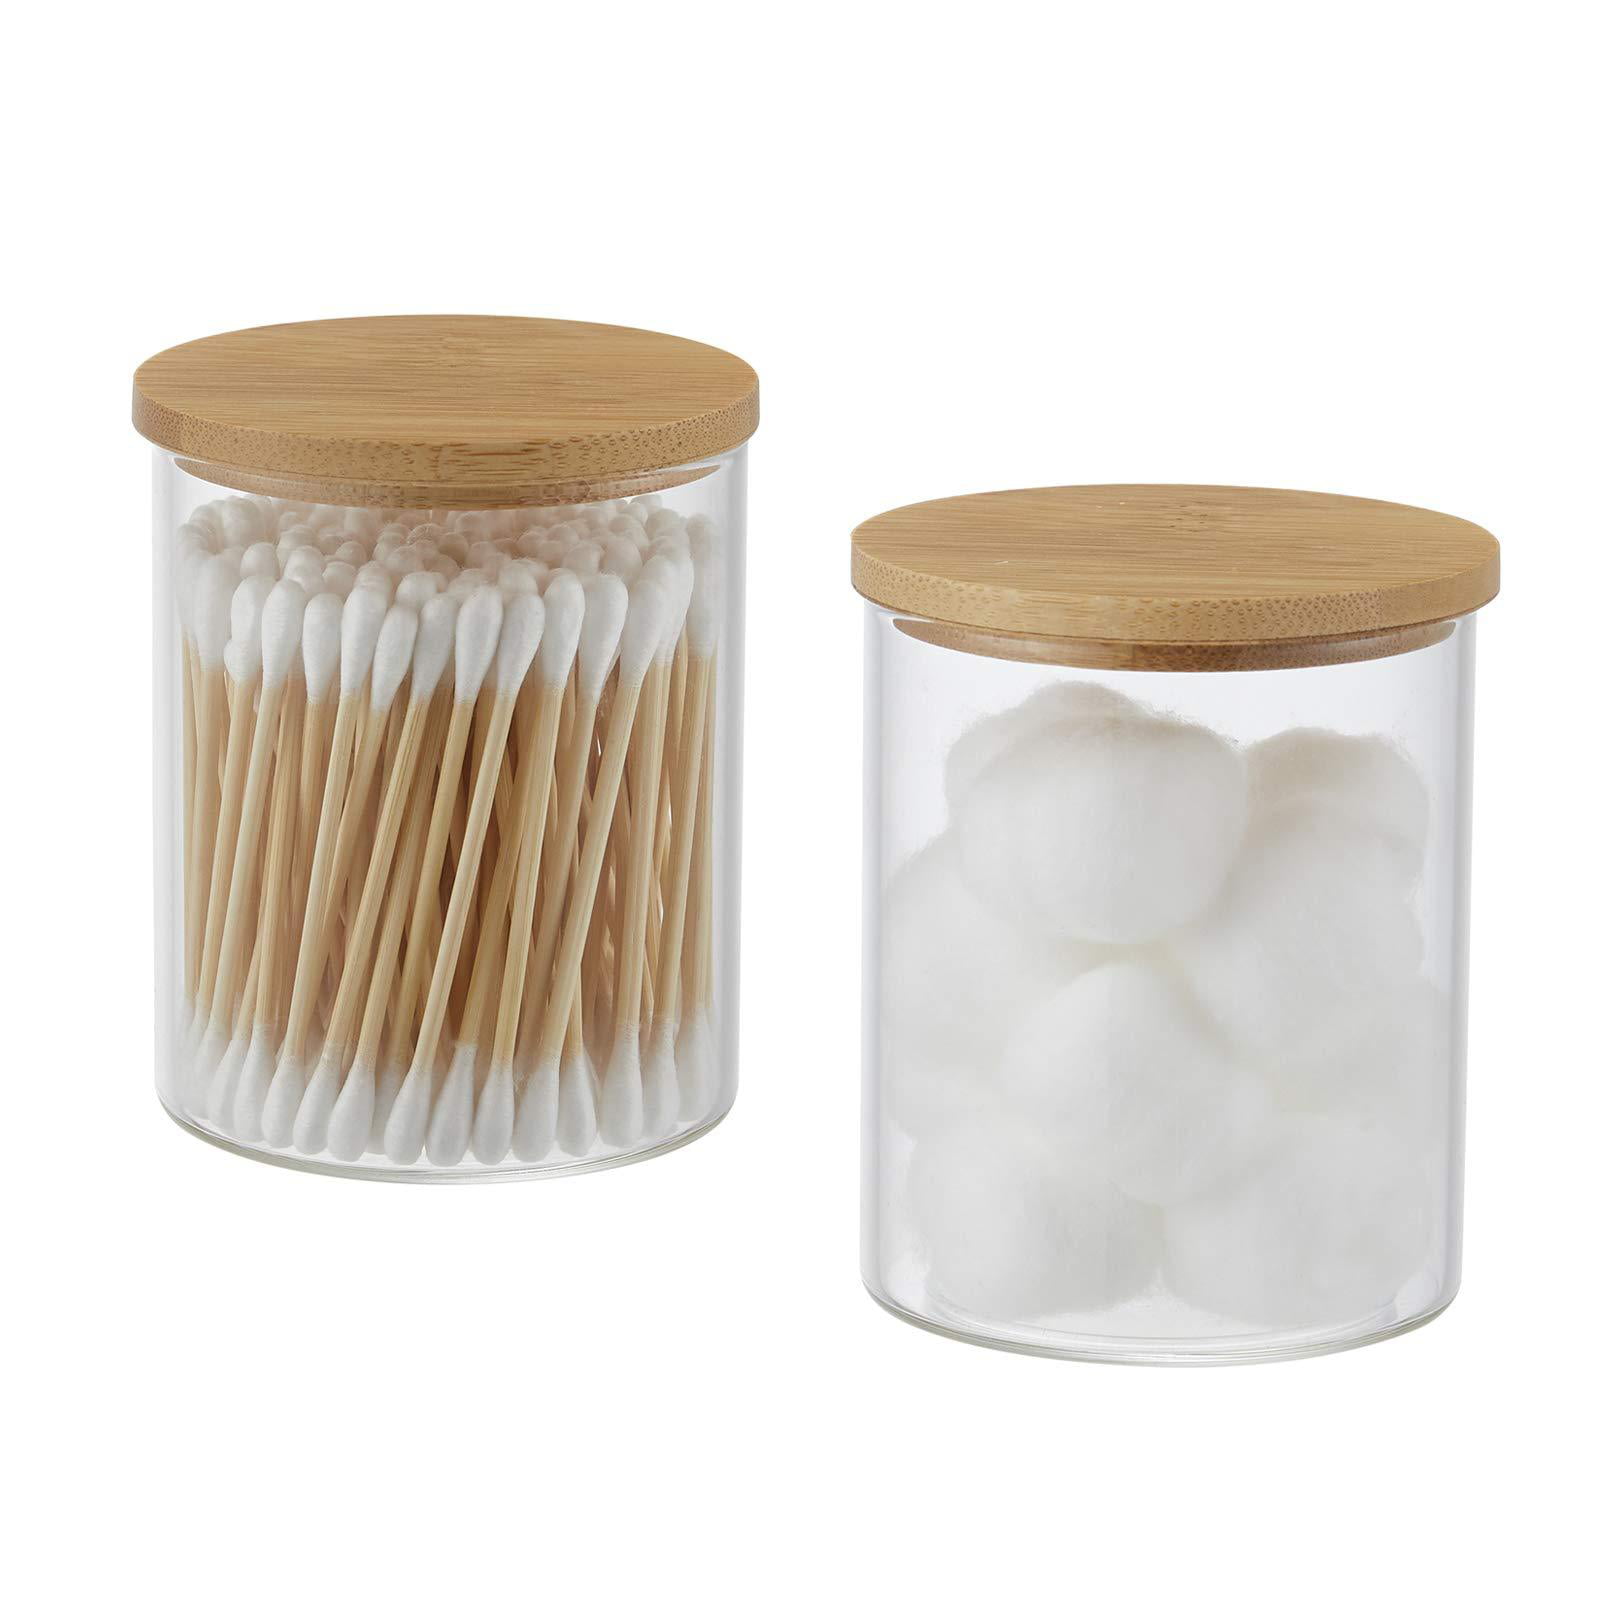 Edelle Porcelain Container Bathroom Utensil Item Cotton Buds Storage Holder Jar